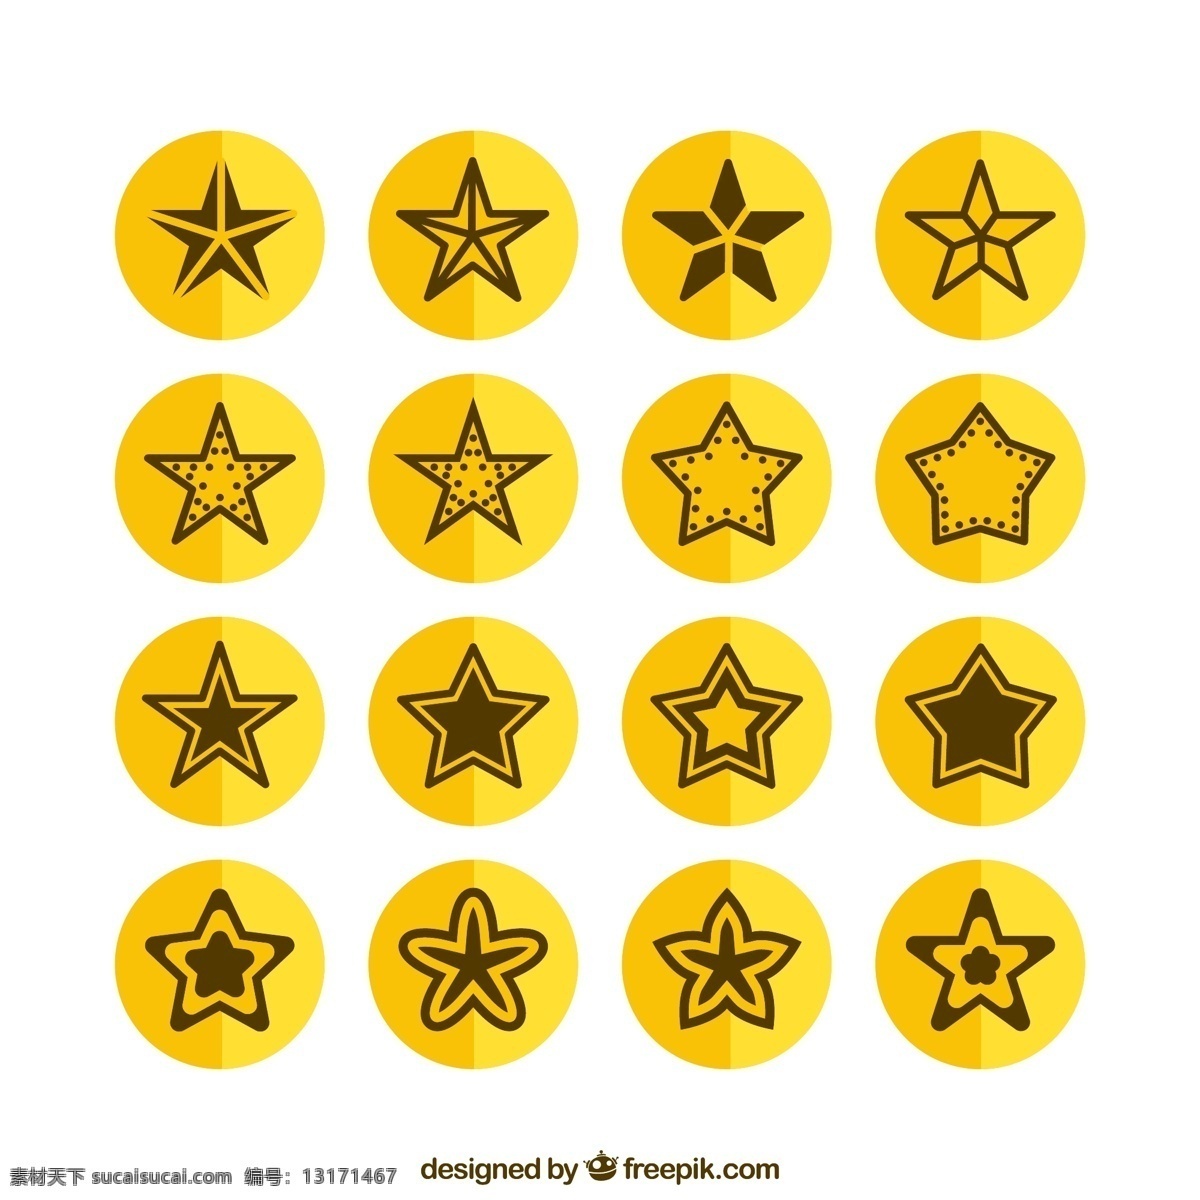 黄色 五星 图标 矢量 圆形 星星 矢量图 格式 高清图片